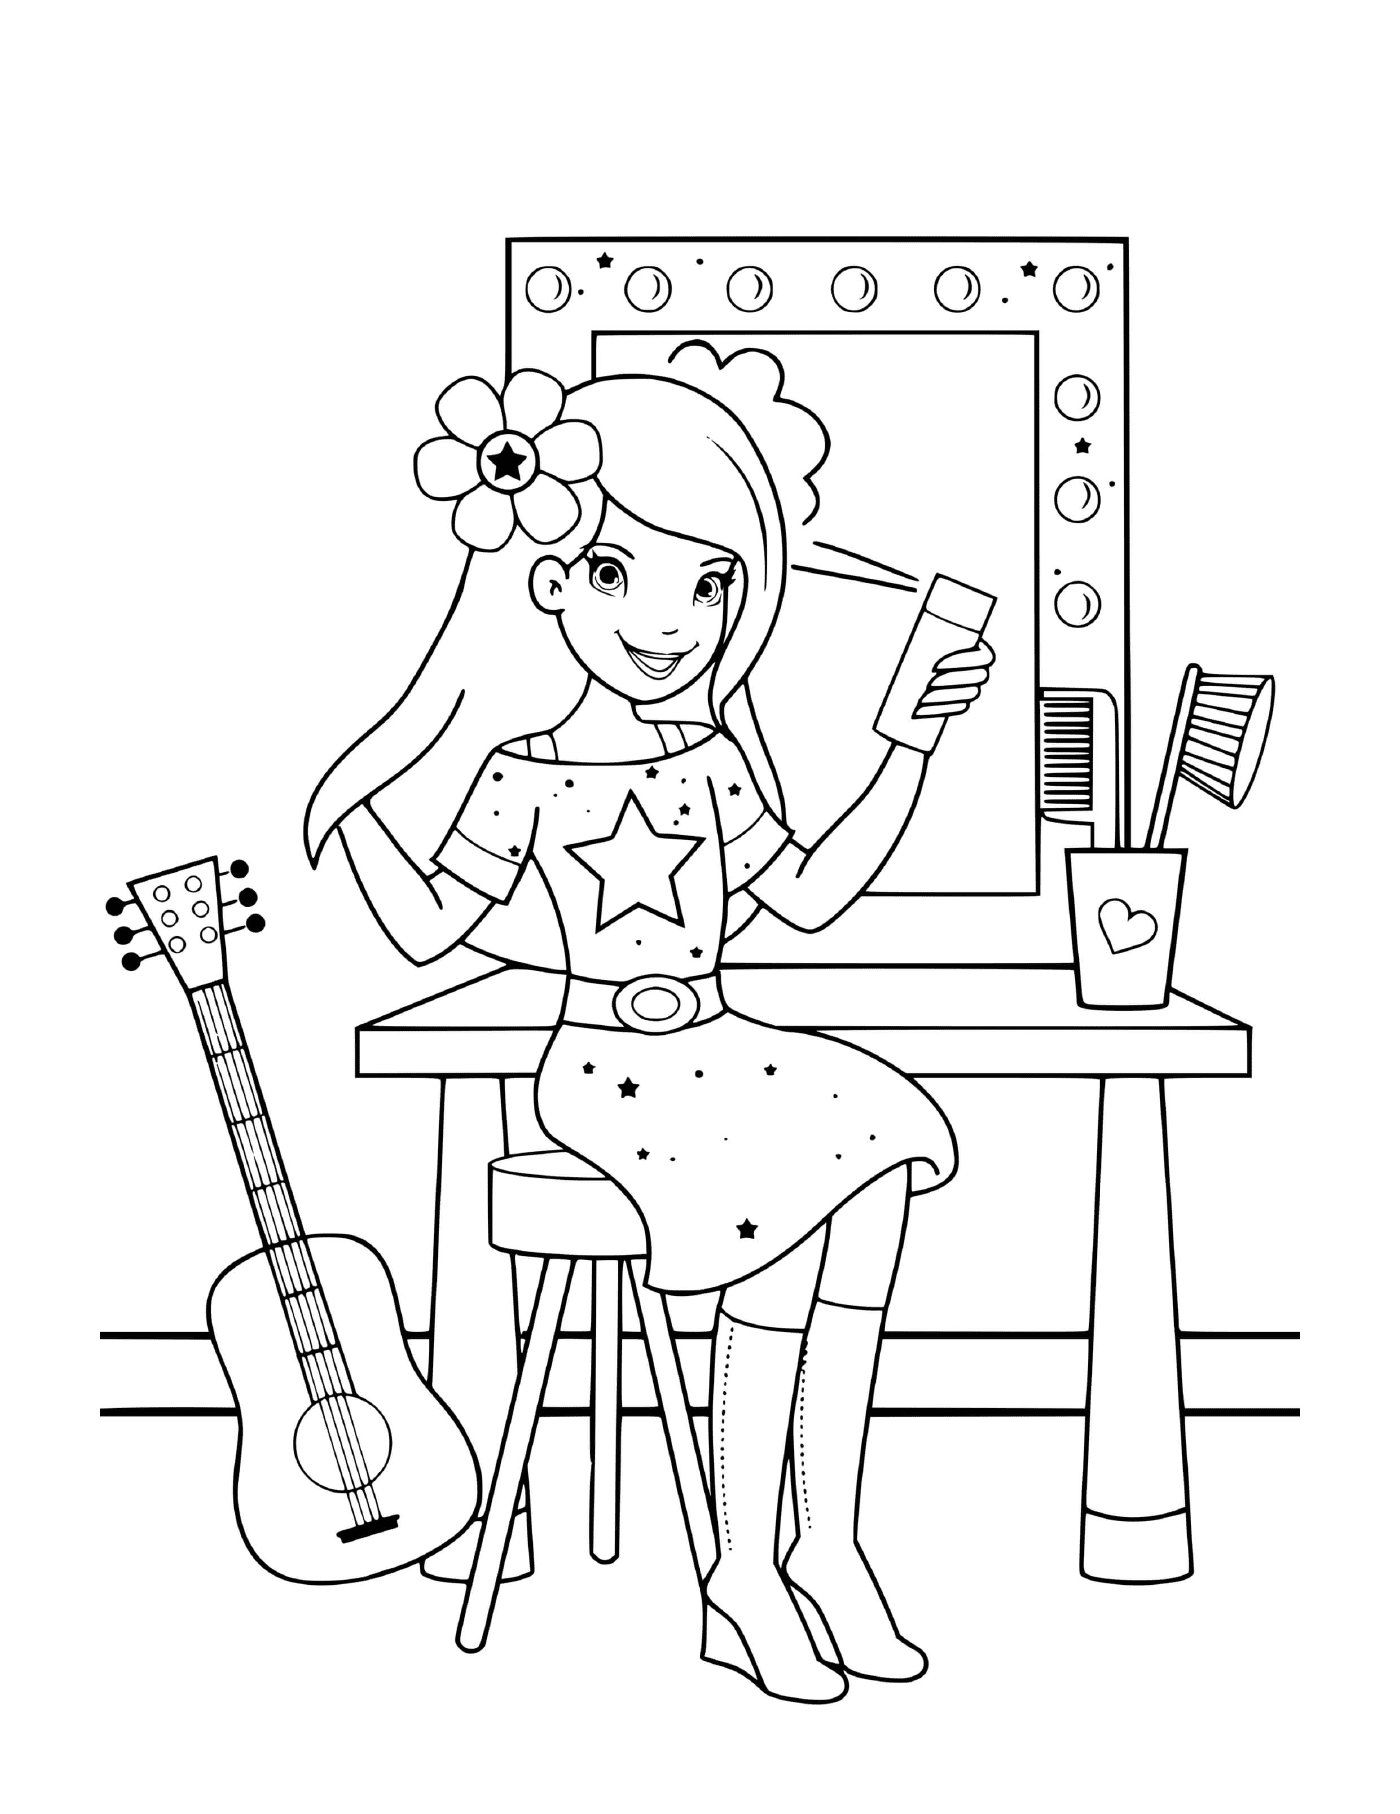   Une fille se préparant pour son spectacle de musique avec une brosse à cheveux 